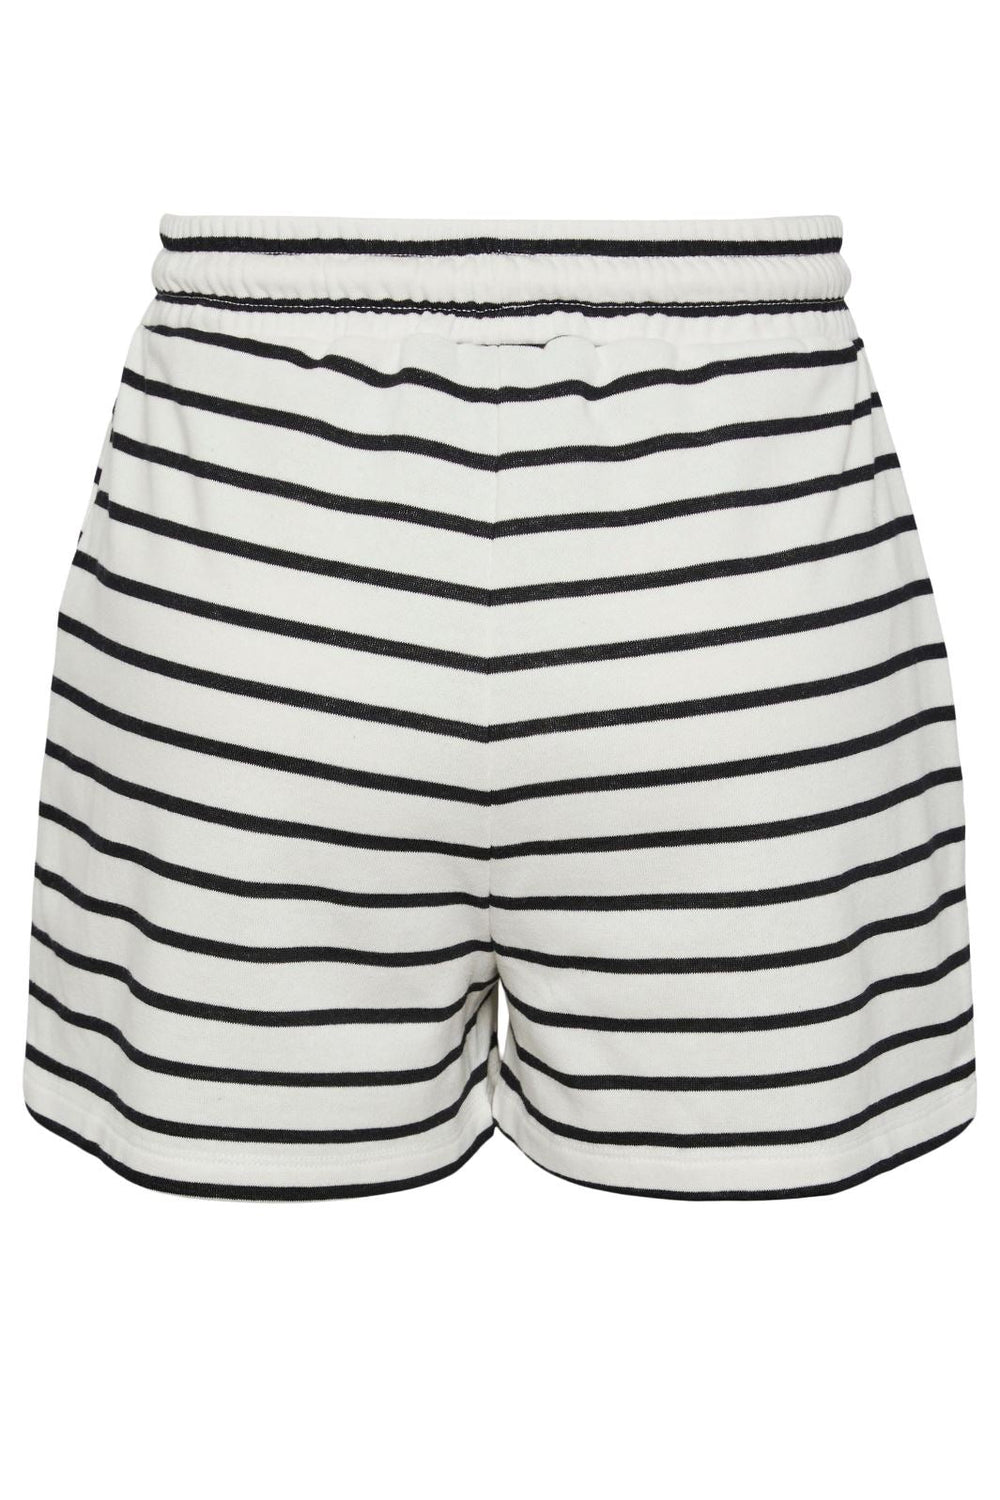 Pieces - Pcchilli Summer Shorts Stripe - 4410140 Cloud Dancer Black Shorts 